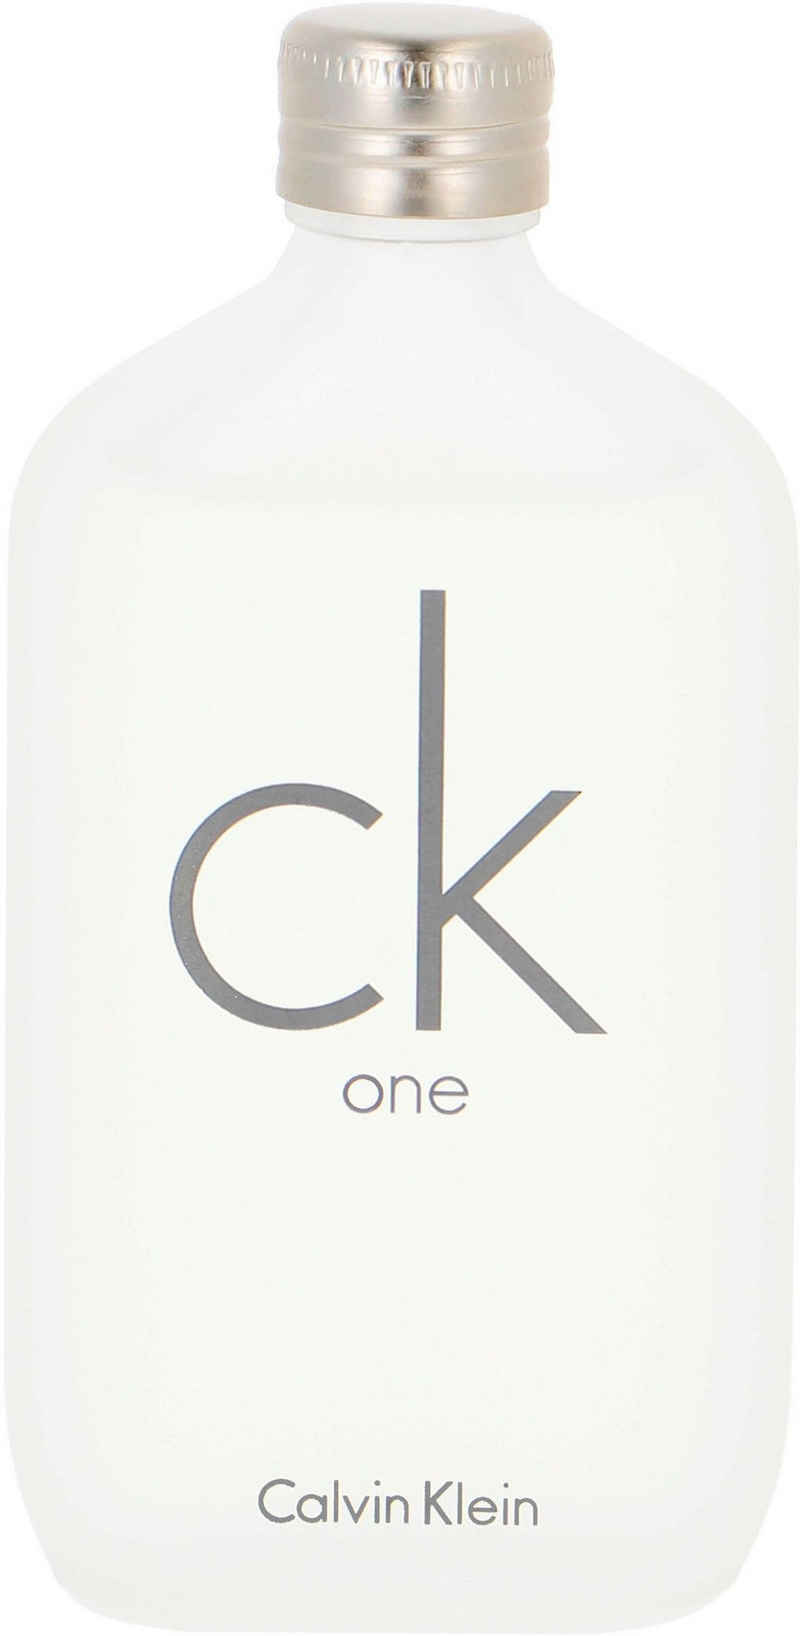 Calvin Klein Eau de Toilette cK one